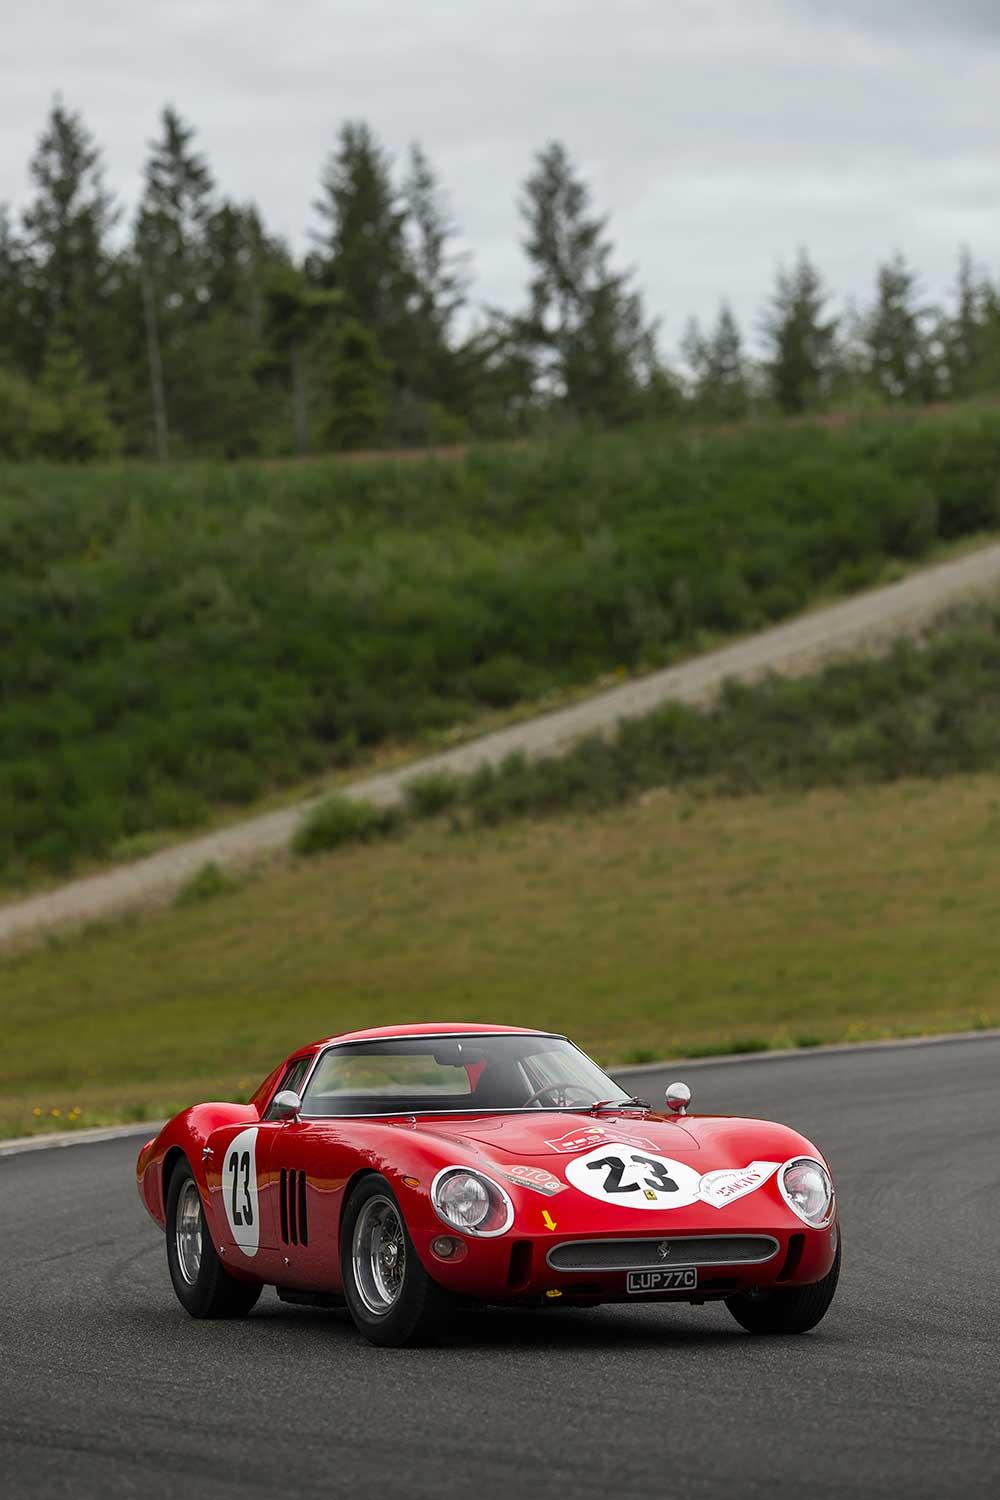 Met een geschatte veilingwaarde van 45 miljoen dollar is deze Ferrari 250 GTO hard op weg de duurste auto ooit te worden.